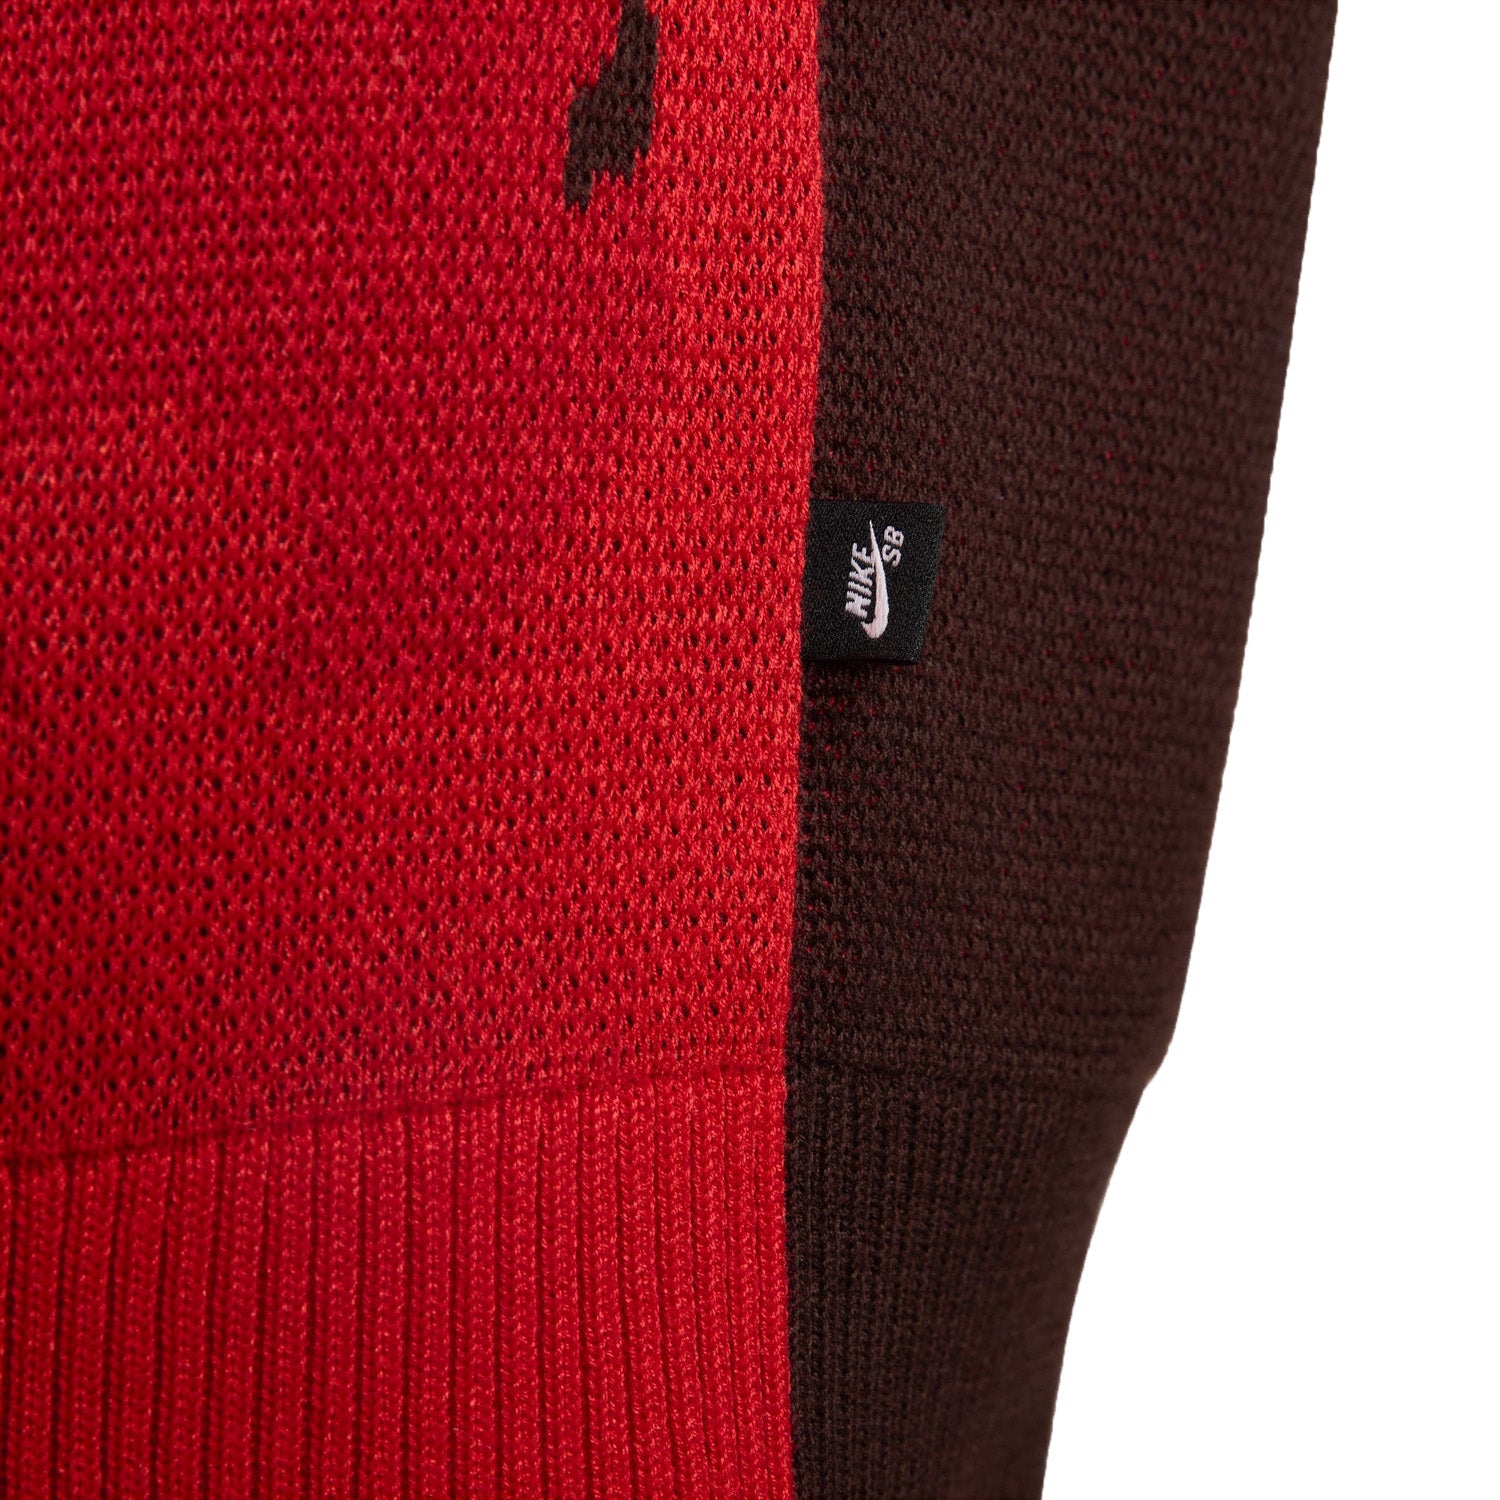 Nike SB Corposk8 Knit Sweater Brown